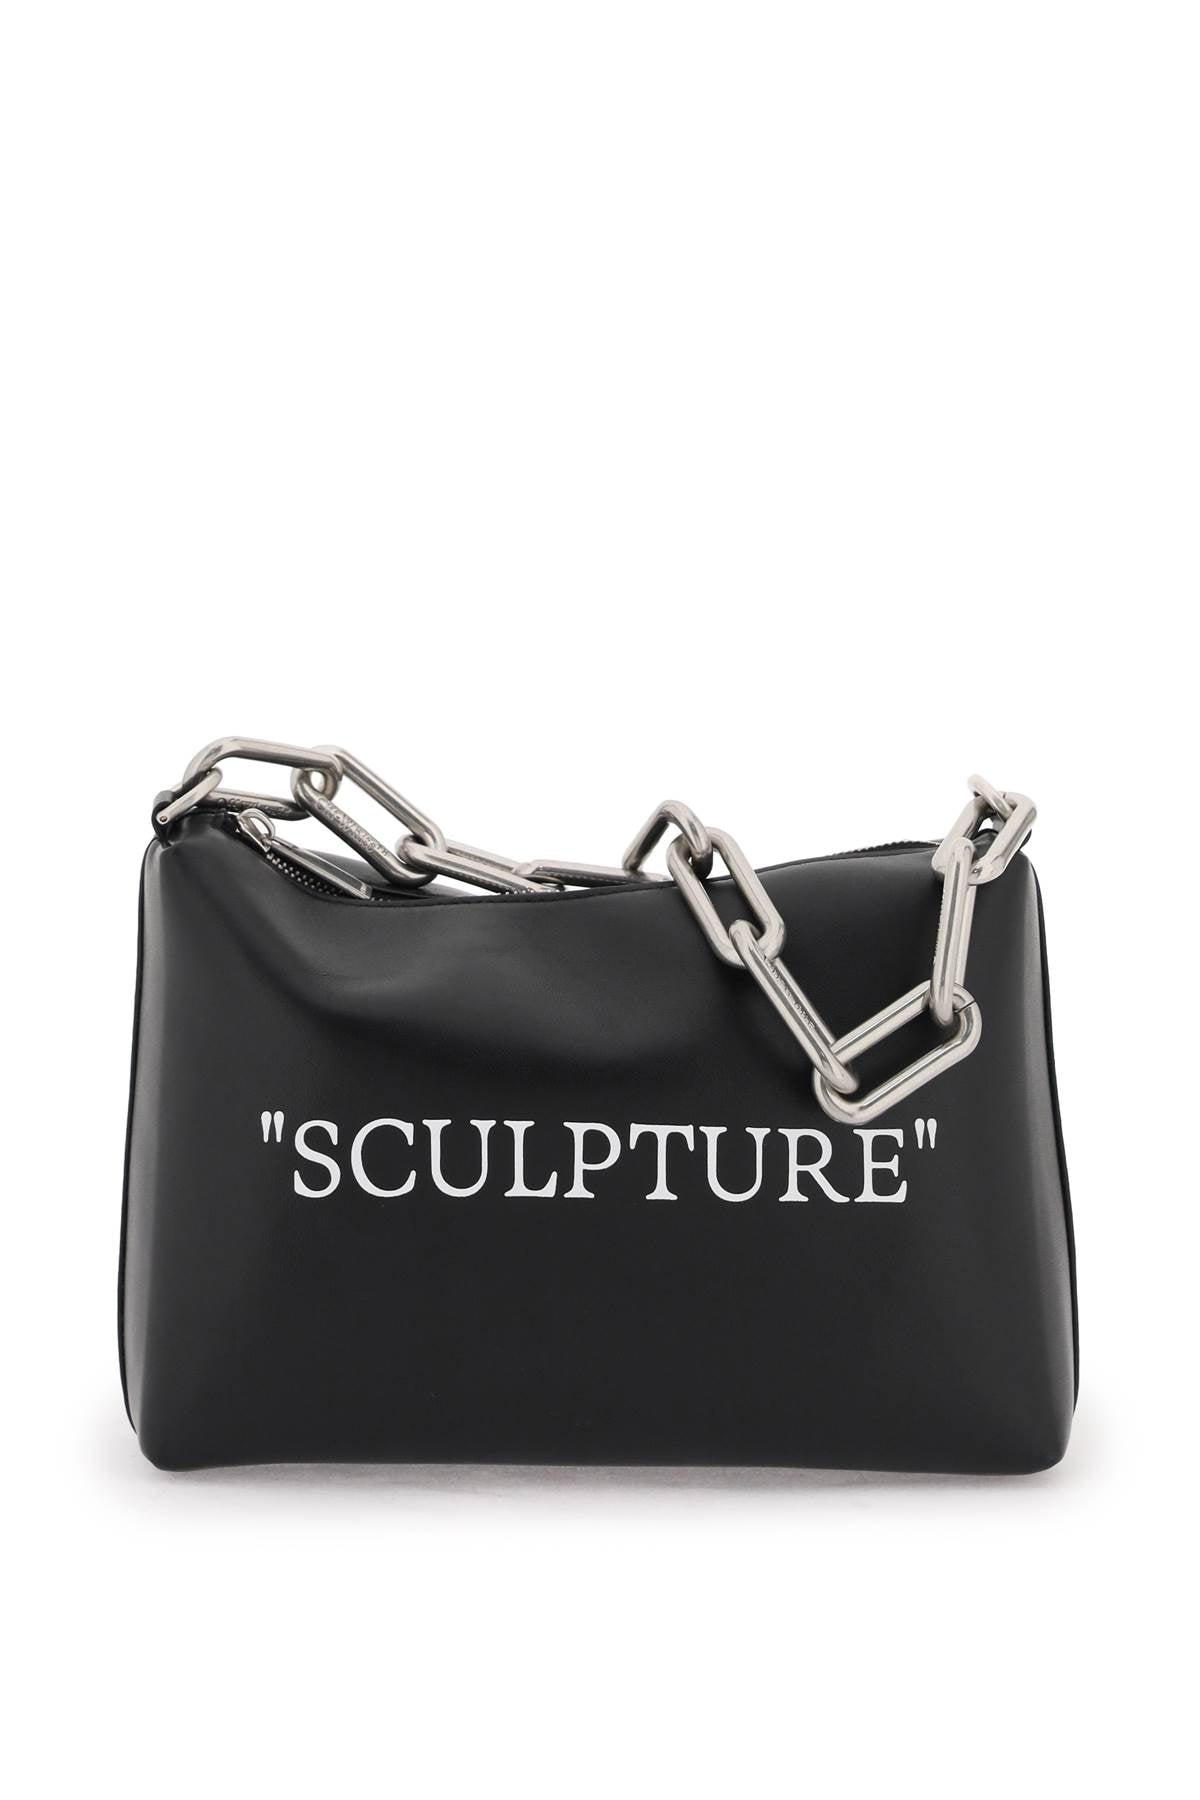 Off-white Sculpture Lettering Crossbody Bag For Women In Black